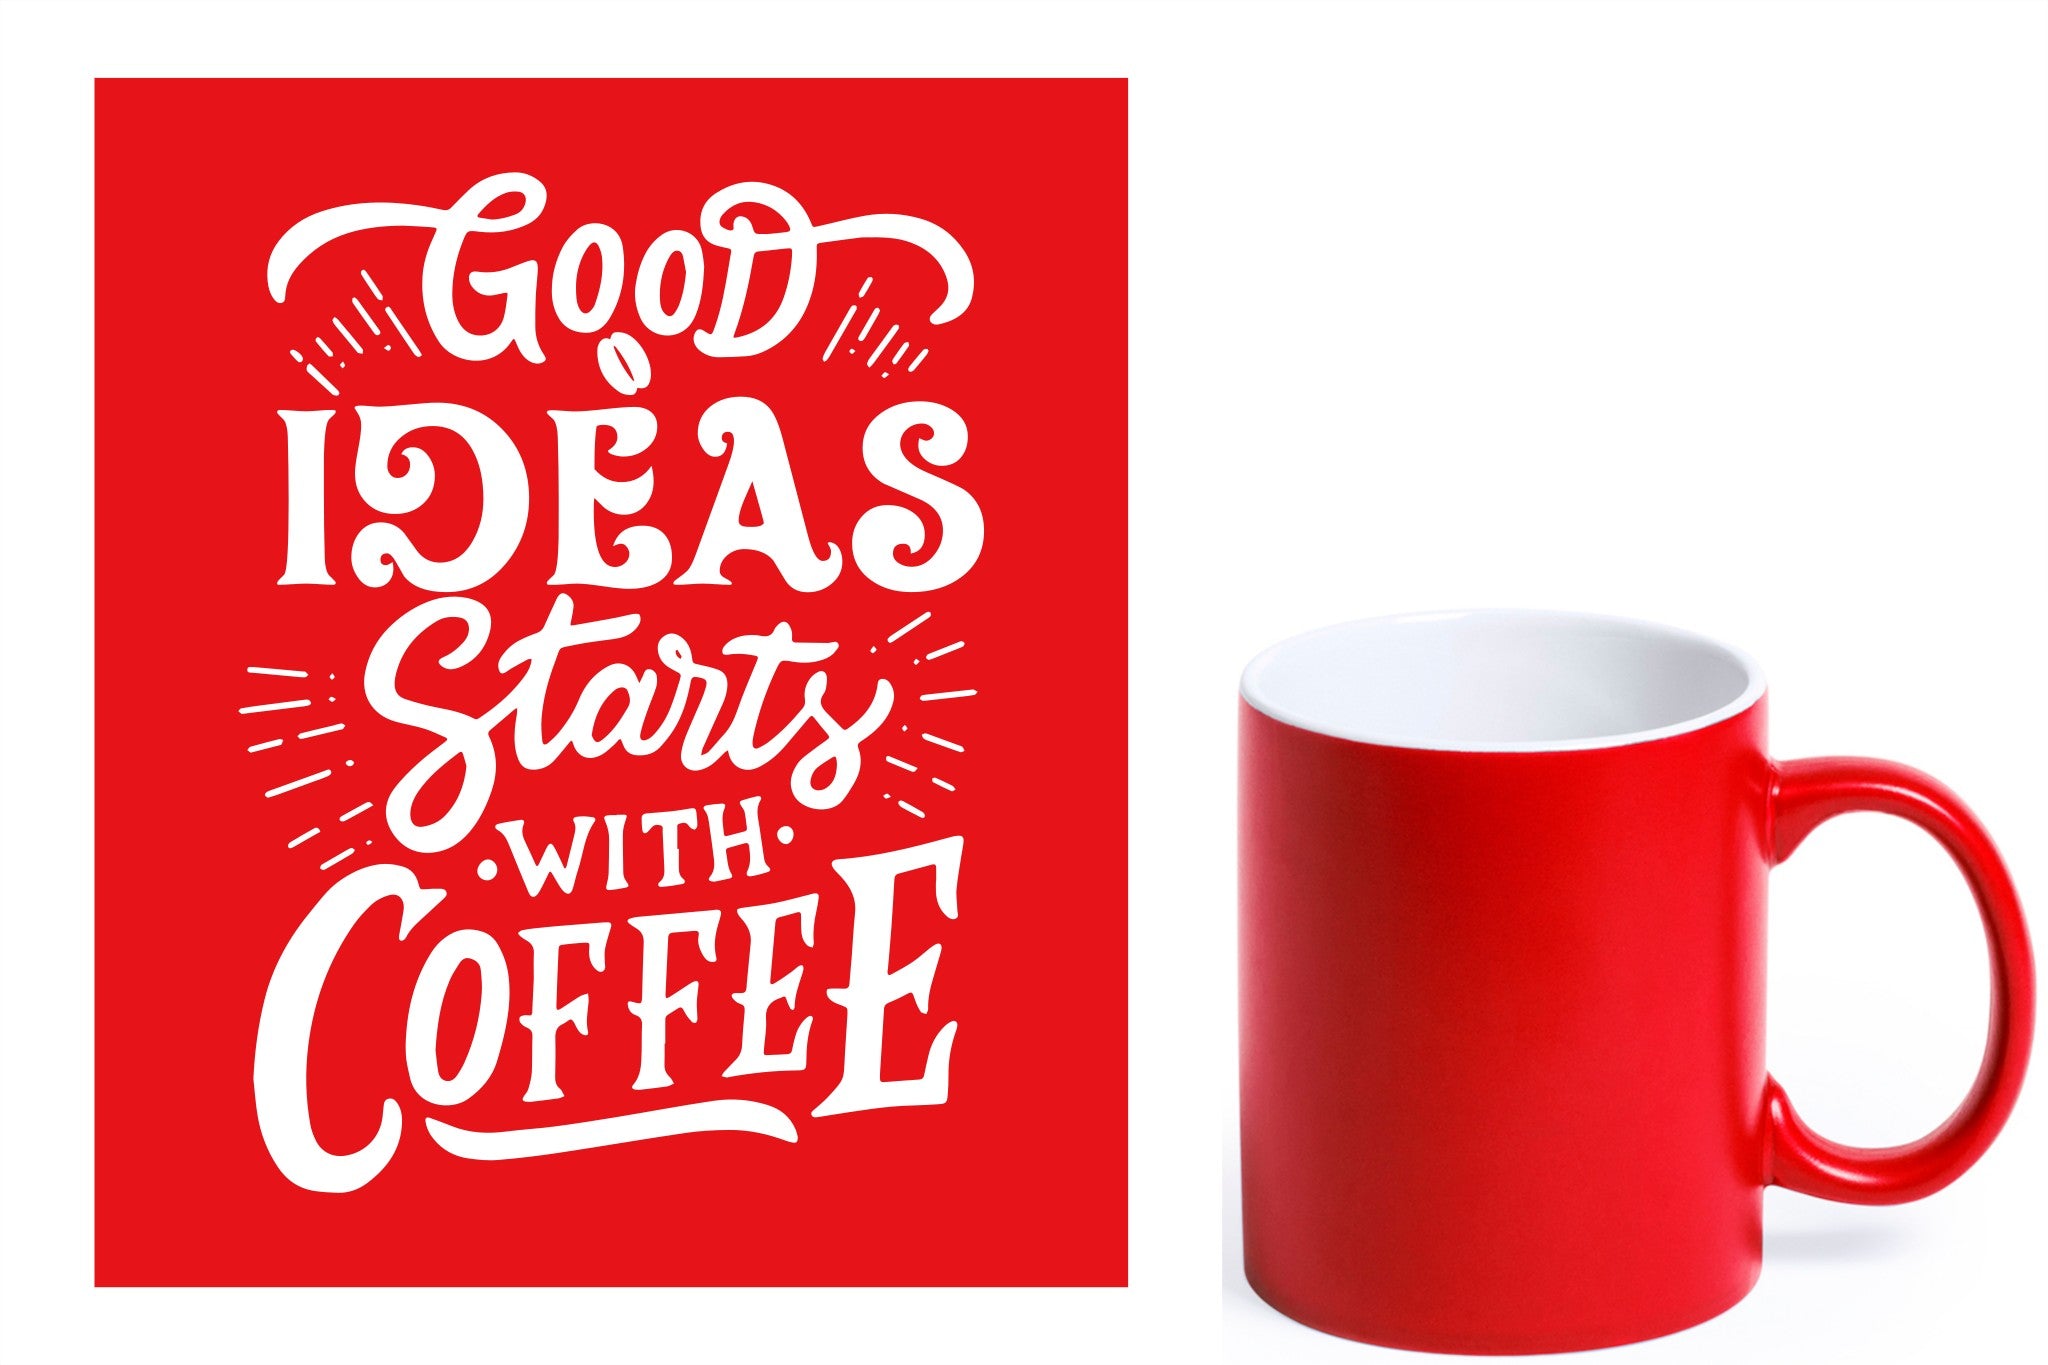 rode keramische mok met witte gravure  'Good ideas starts with coffee'.